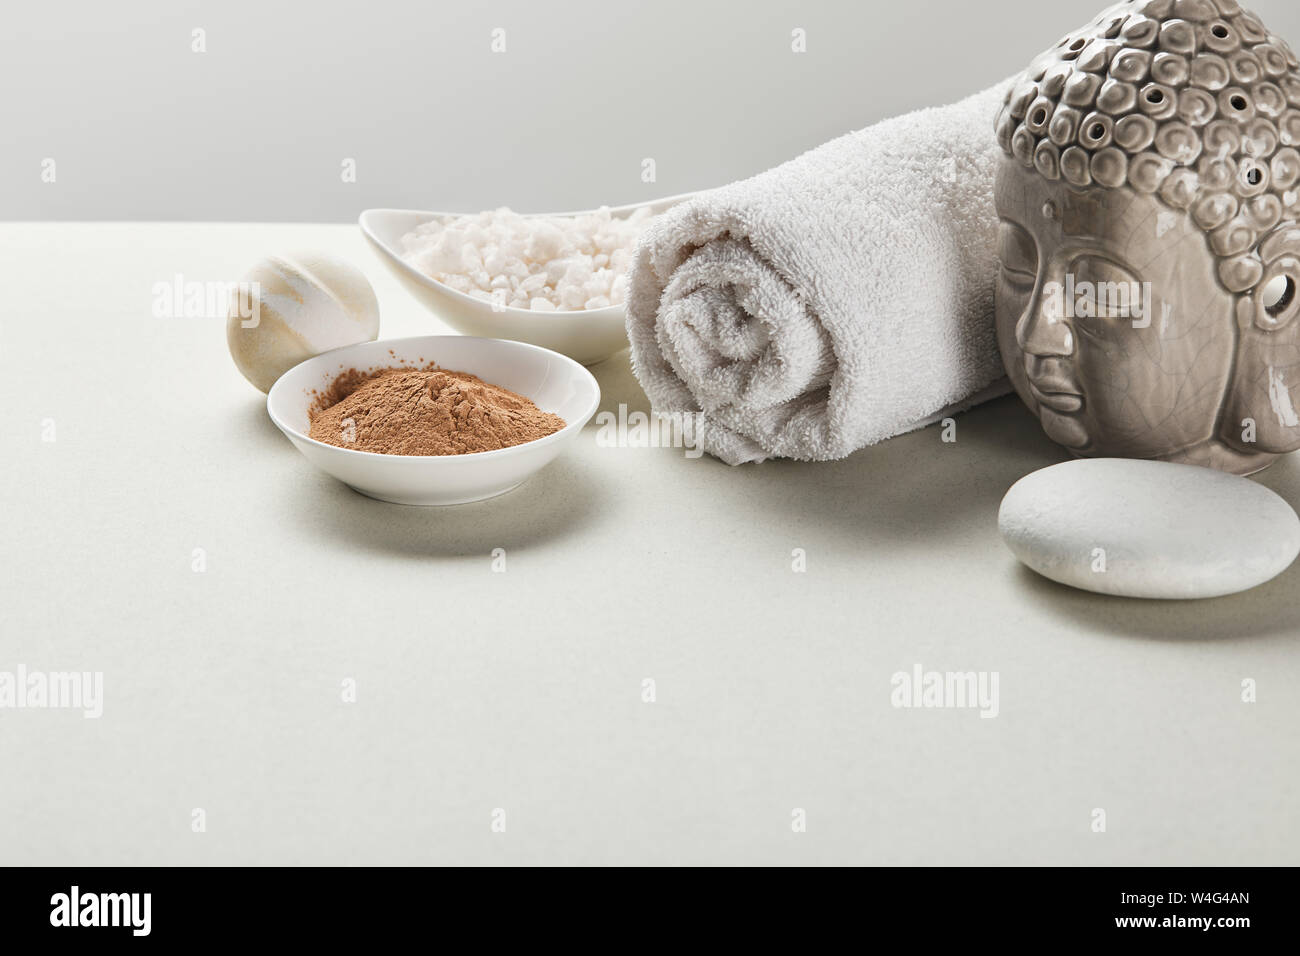 Meersalz und Lehm Pulver in Schalen, Baumwolle Handtuch, Stein, Badebombe  und Buddha Figur am weißen Tisch isoliert auf Grau Stockfotografie - Alamy